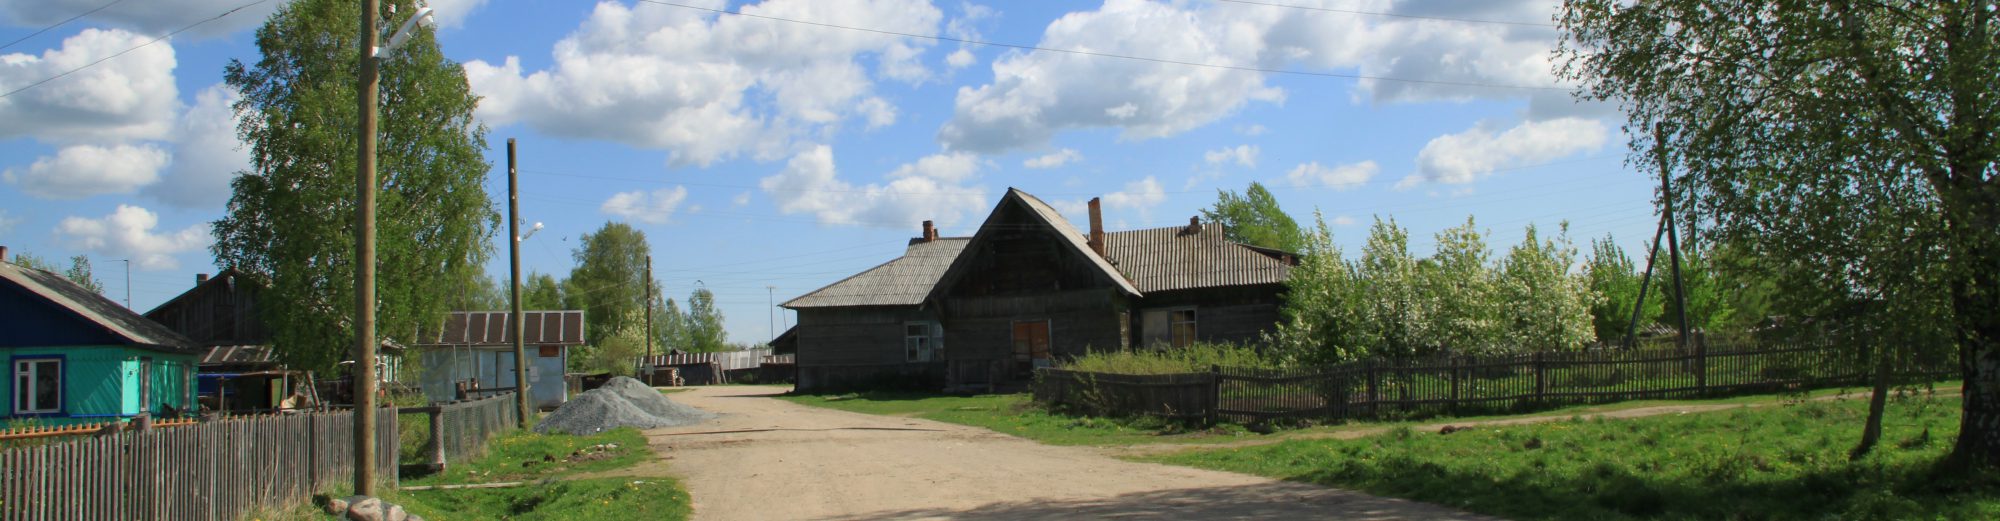 Деревня Уница